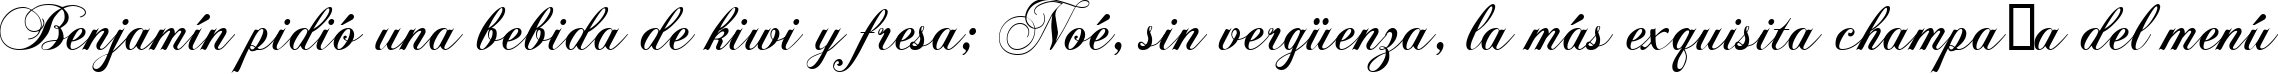 Пример написания шрифтом ChopinScript текста на испанском